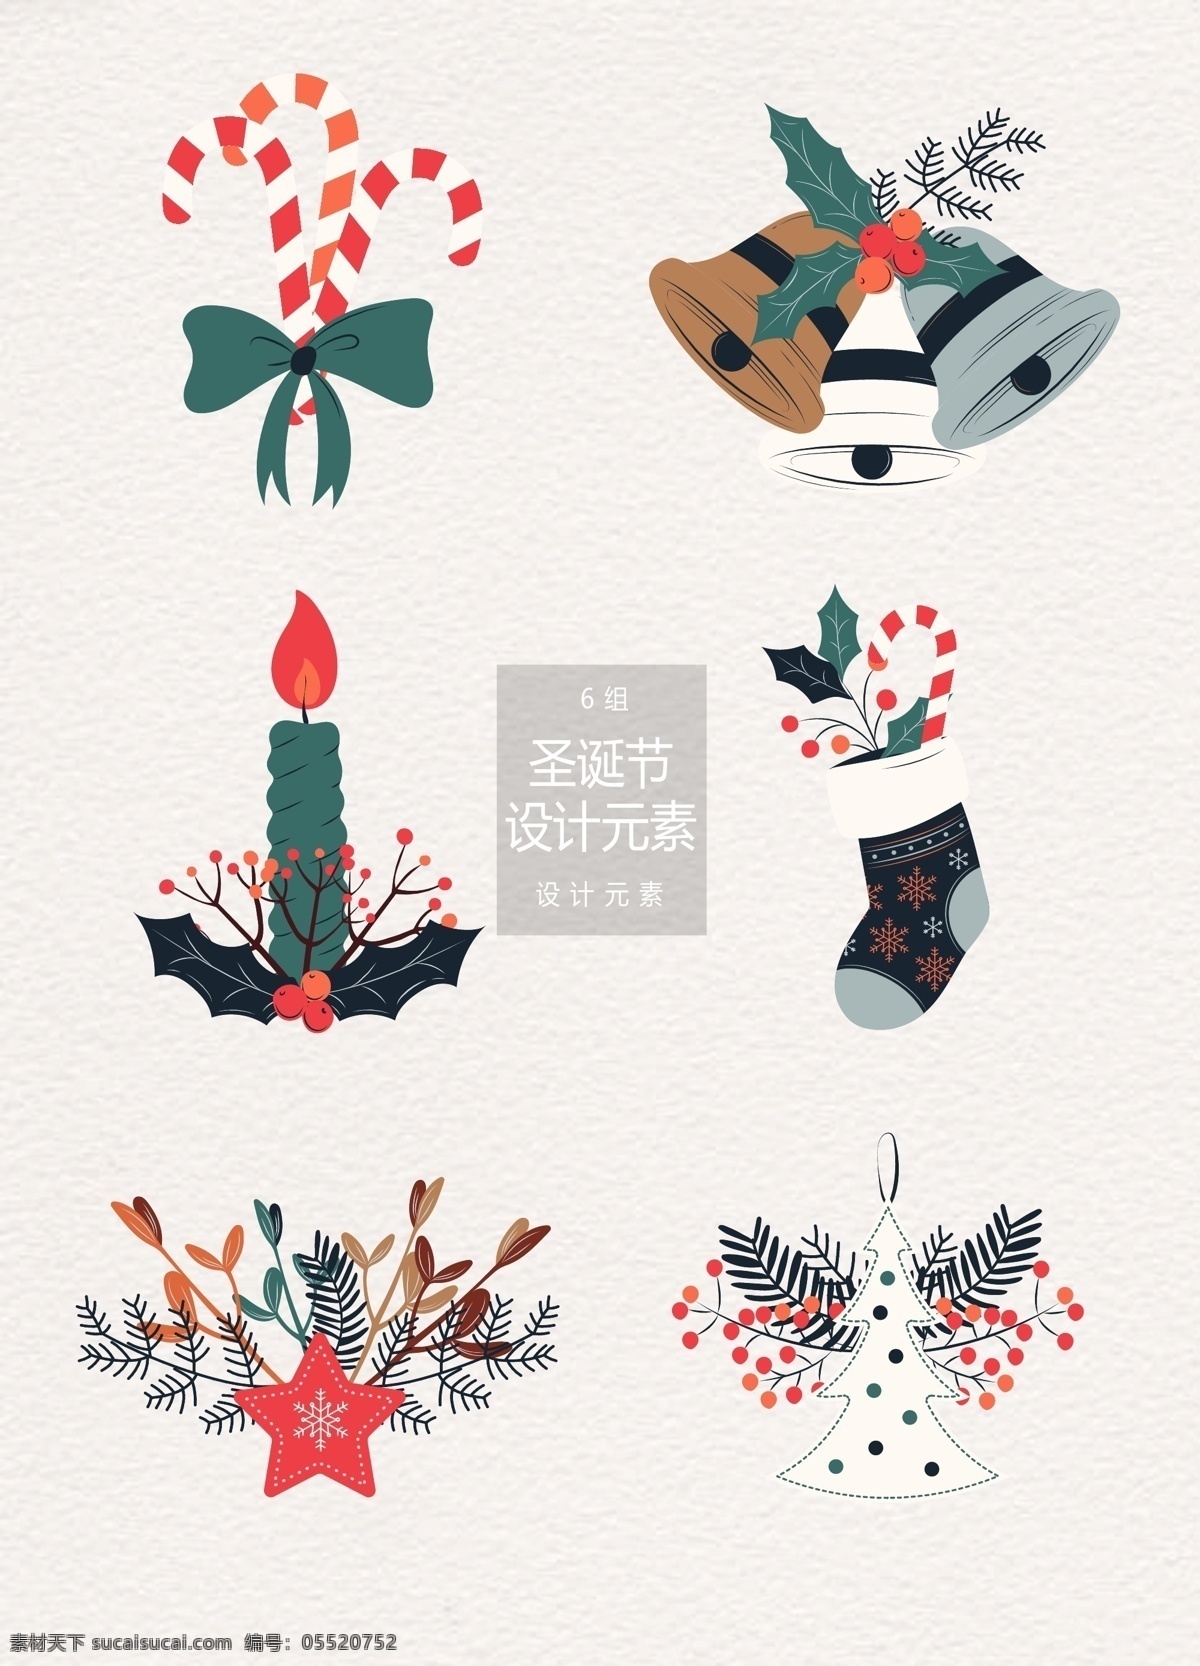 文艺 圣诞节 装饰设计 元素 设计元素 蜡烛 袜子 圣诞树 文艺装饰 圣诞 铃铛 圣诞袜